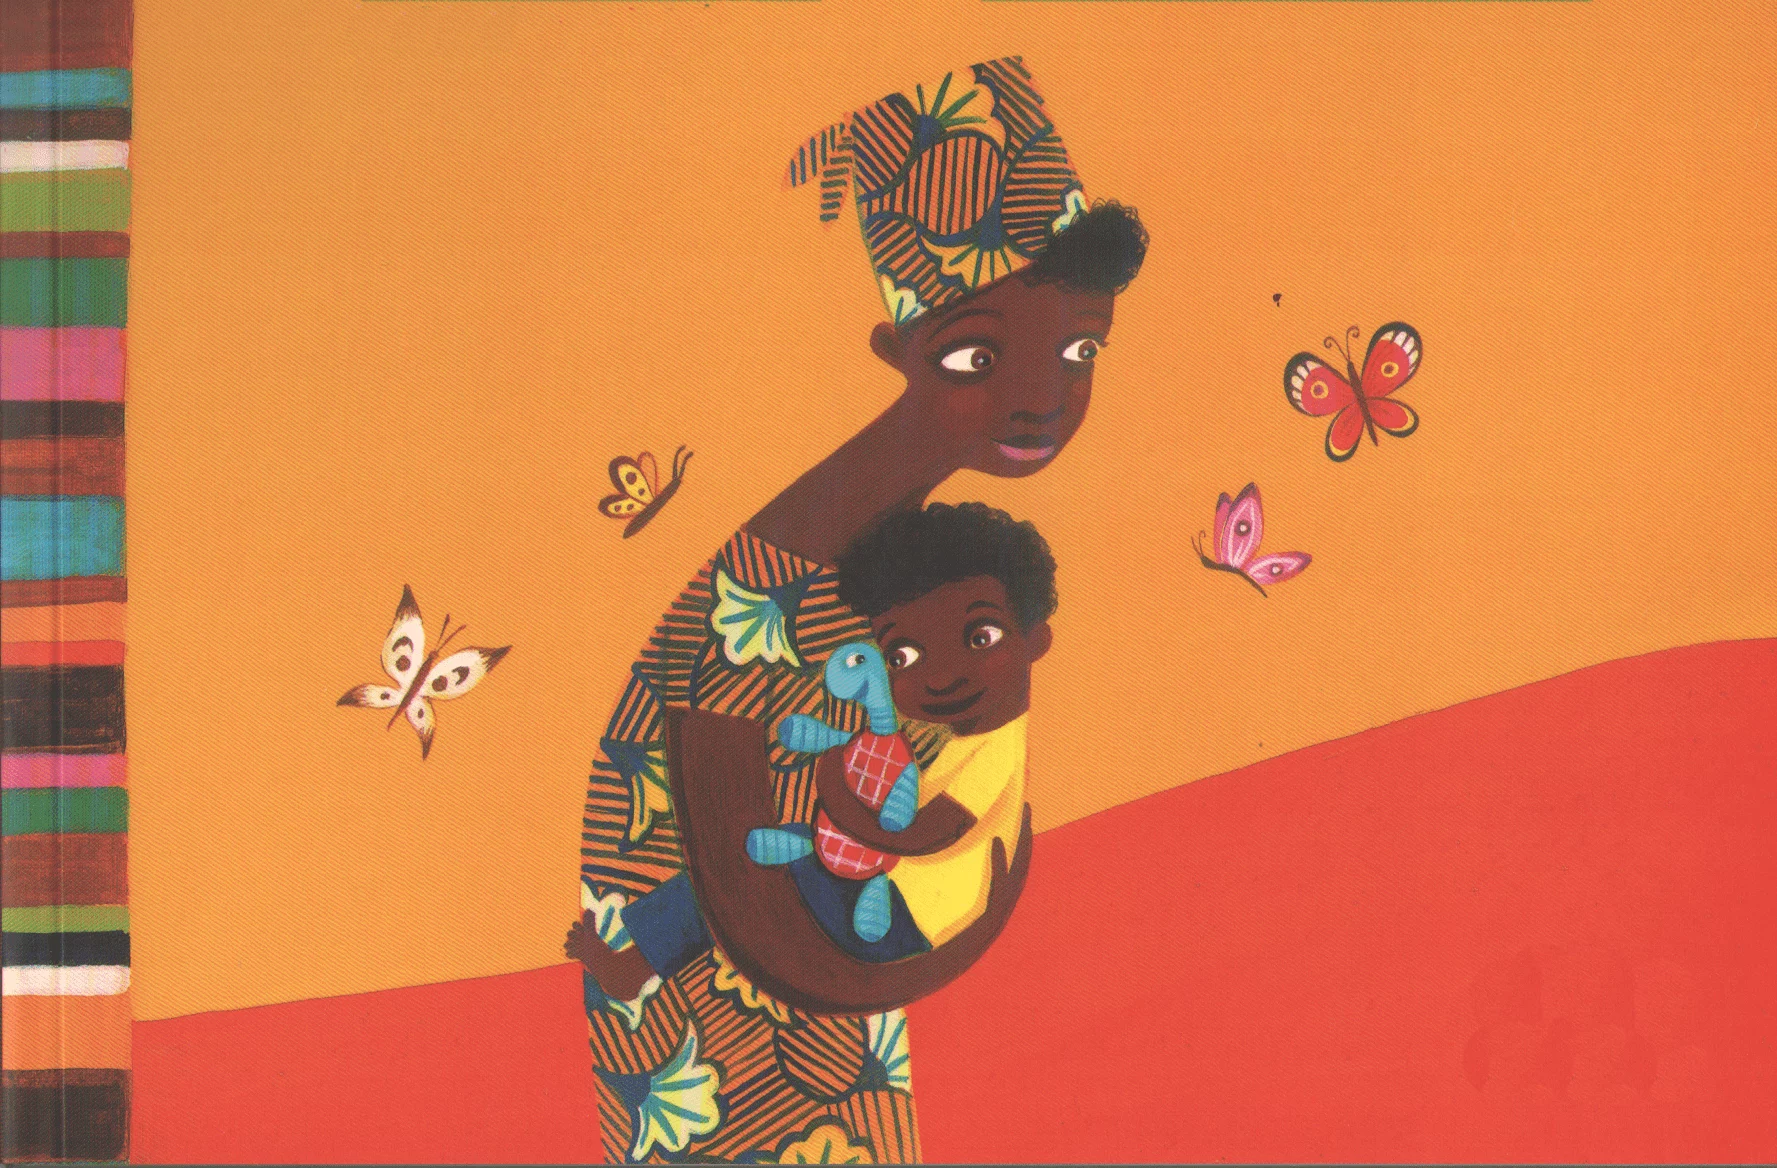 Dicas de livros infantis para celebrar a cultura afro-brasileira